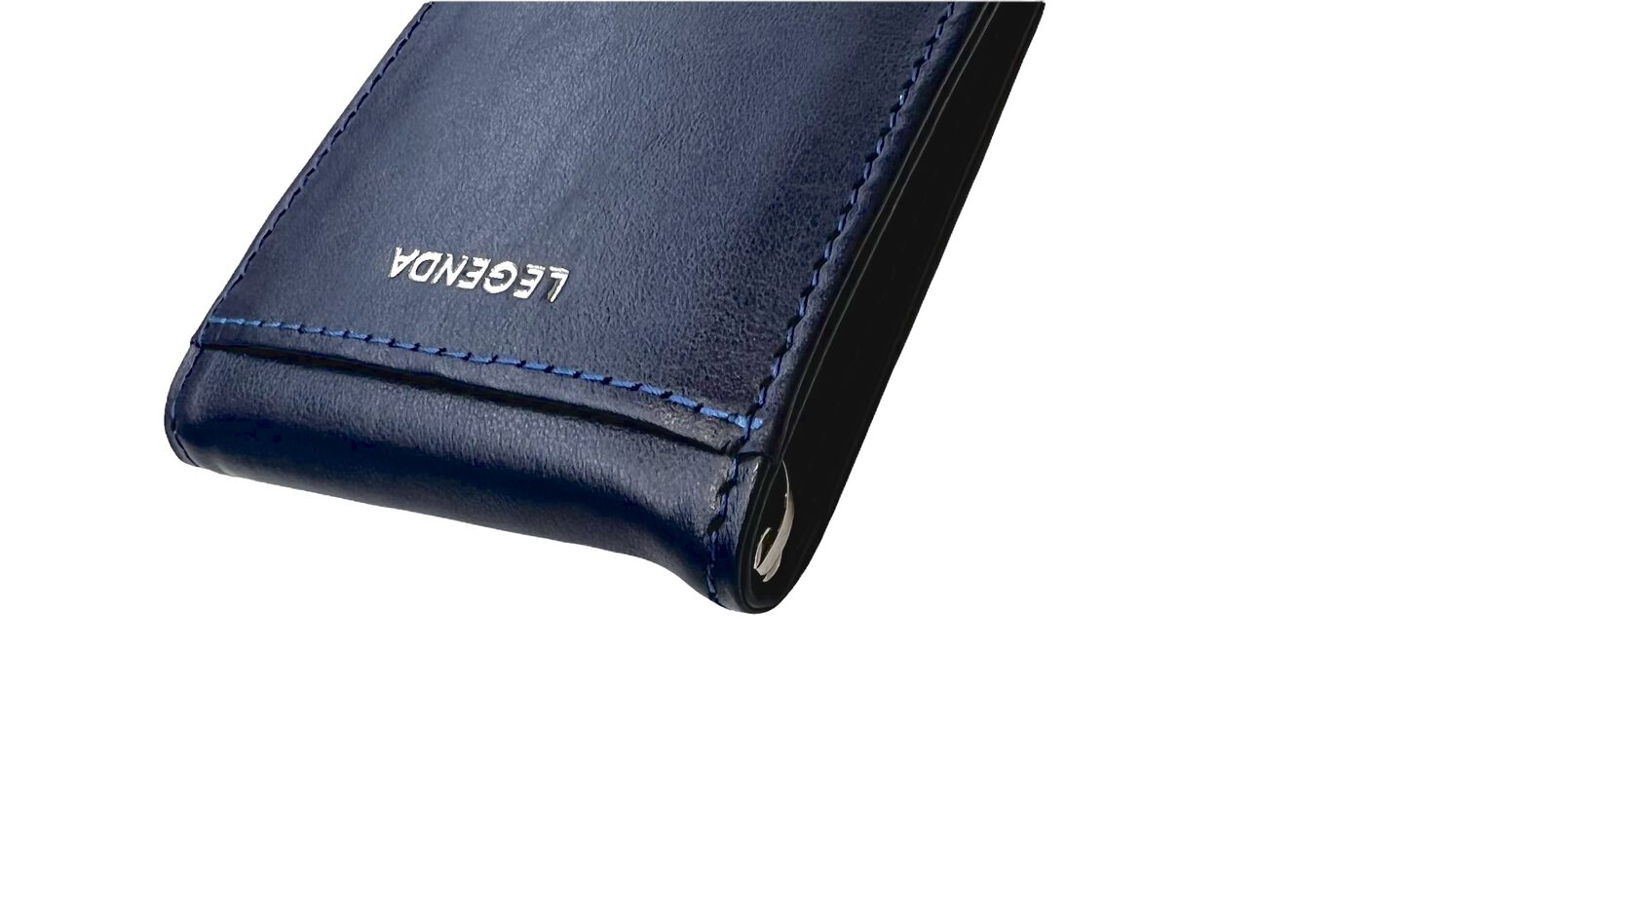 Бумажник с зажимом для купюр и RFID защитой